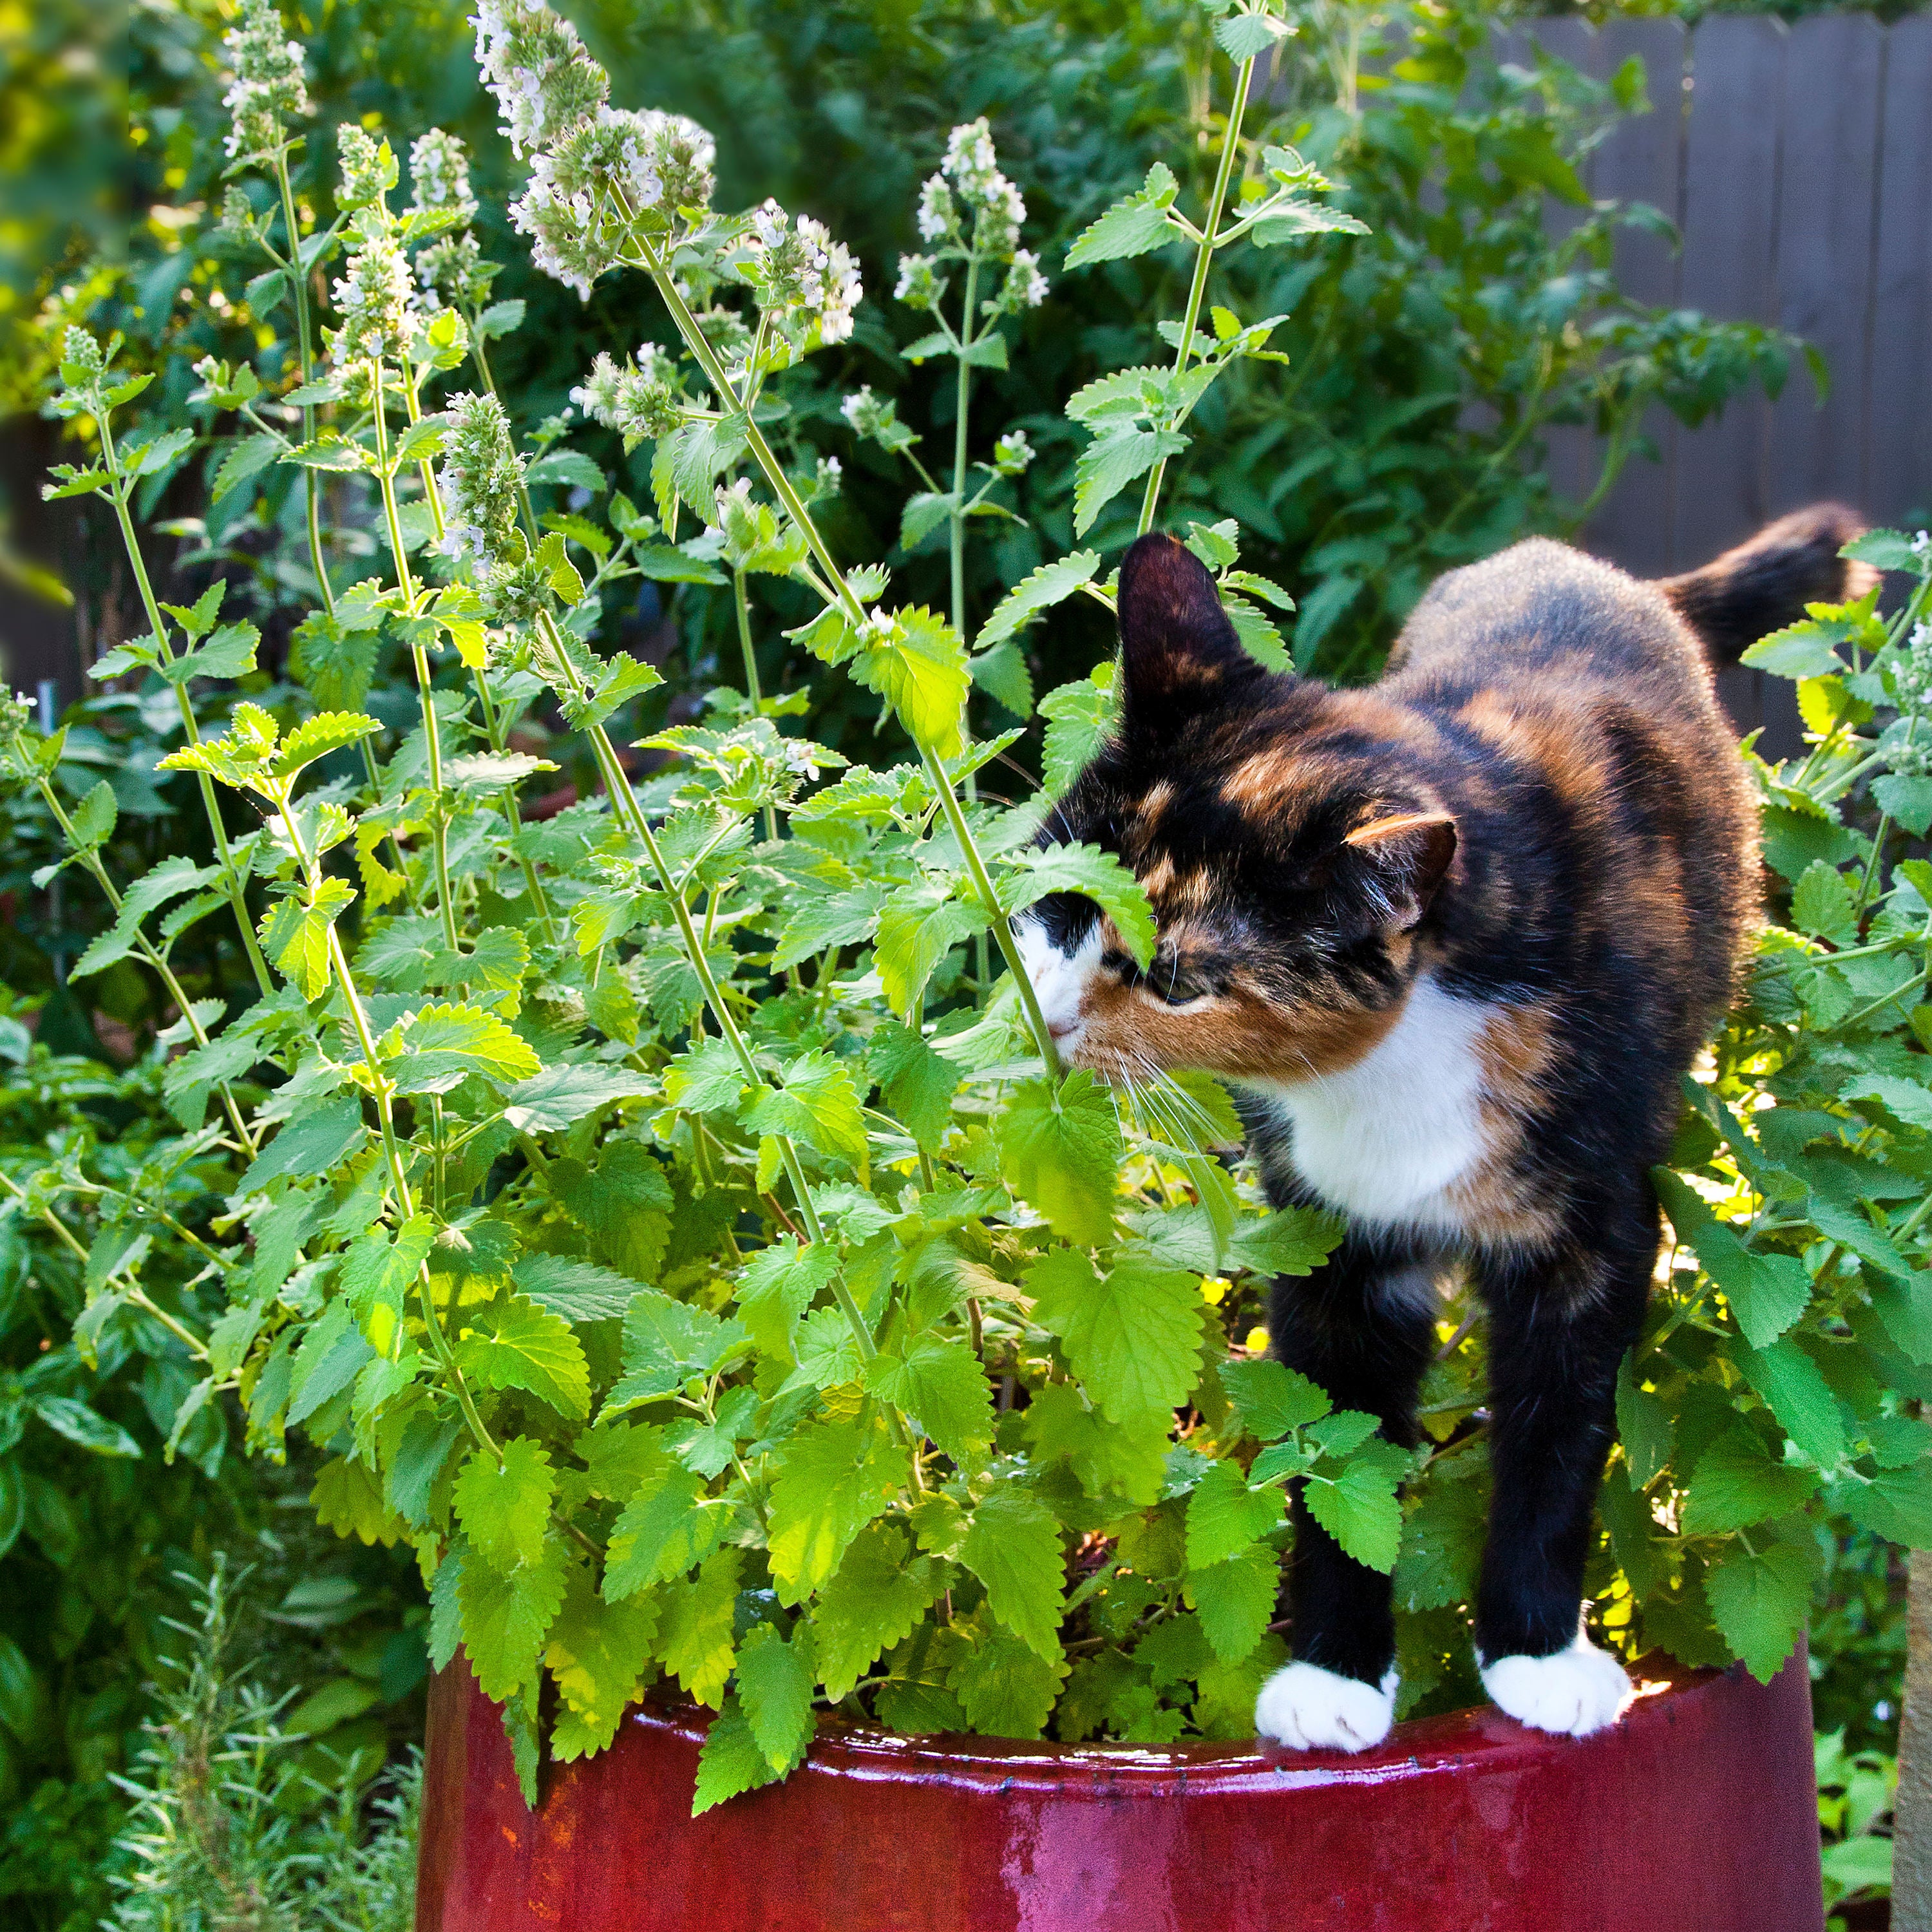 Image of Catnip companion plant for citronella